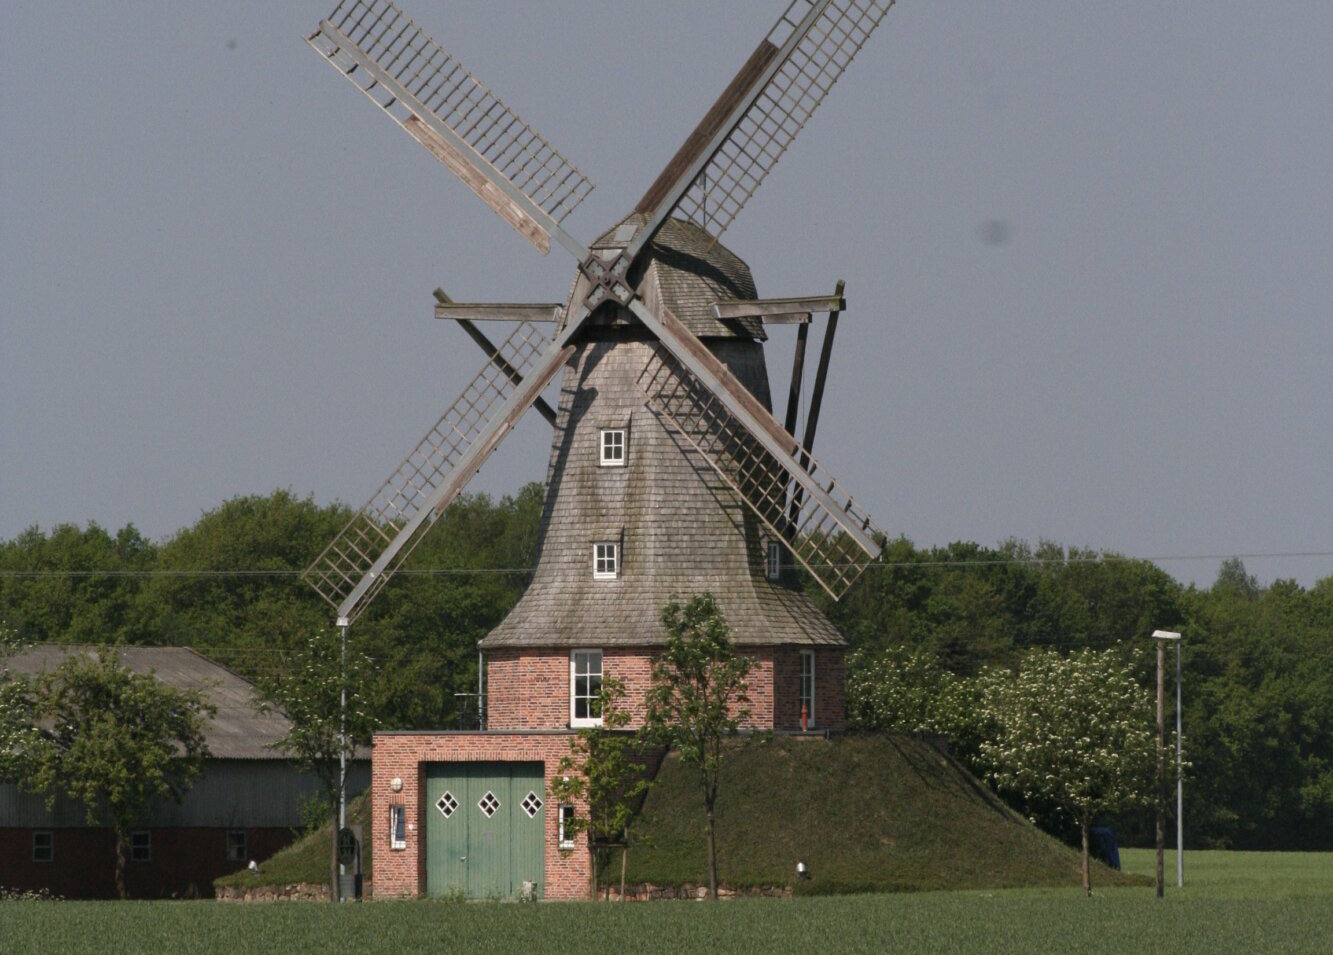 Darstellung einer Windmühle, die symbolisch für die Niederlande stehen soll.